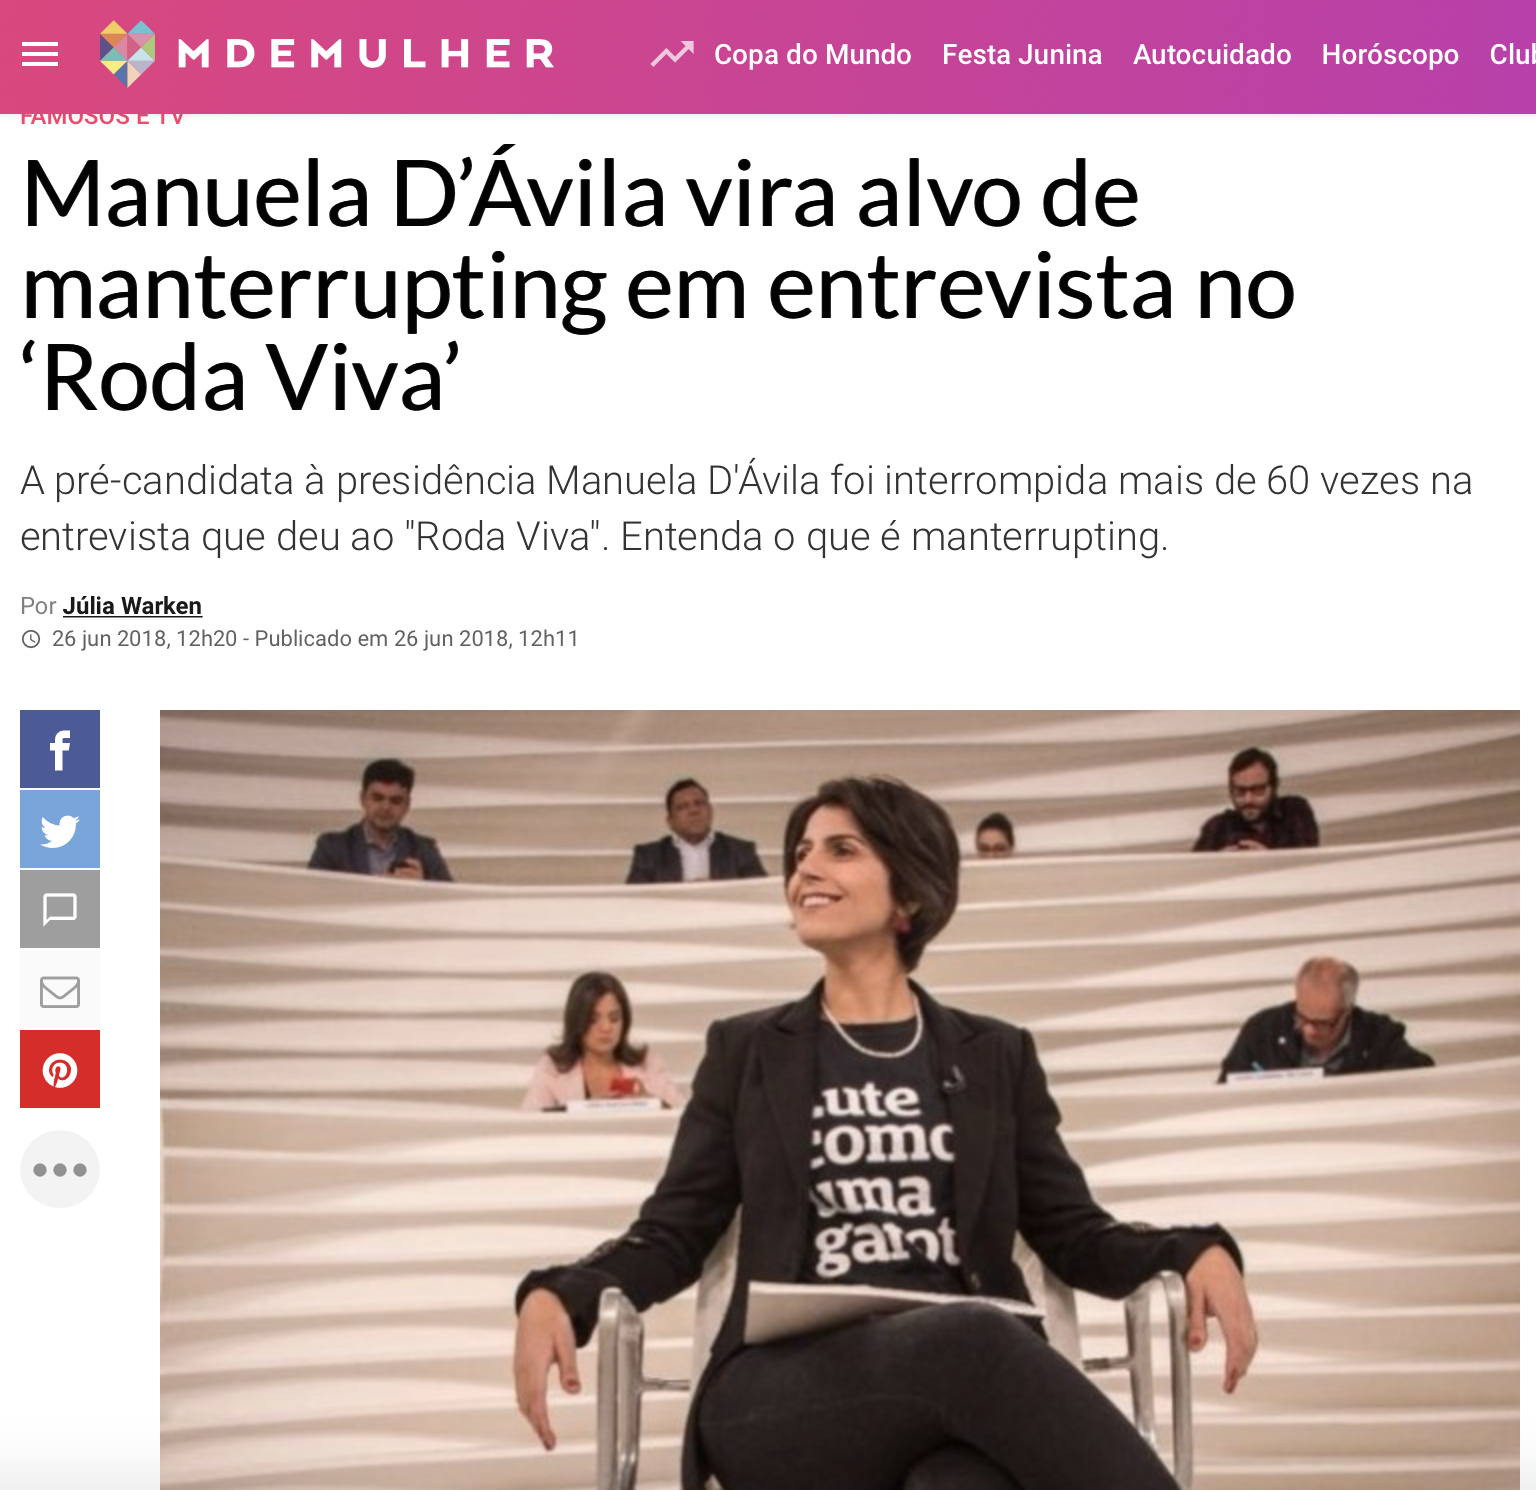 Manuela d'Ávila em revista feminina da Abril